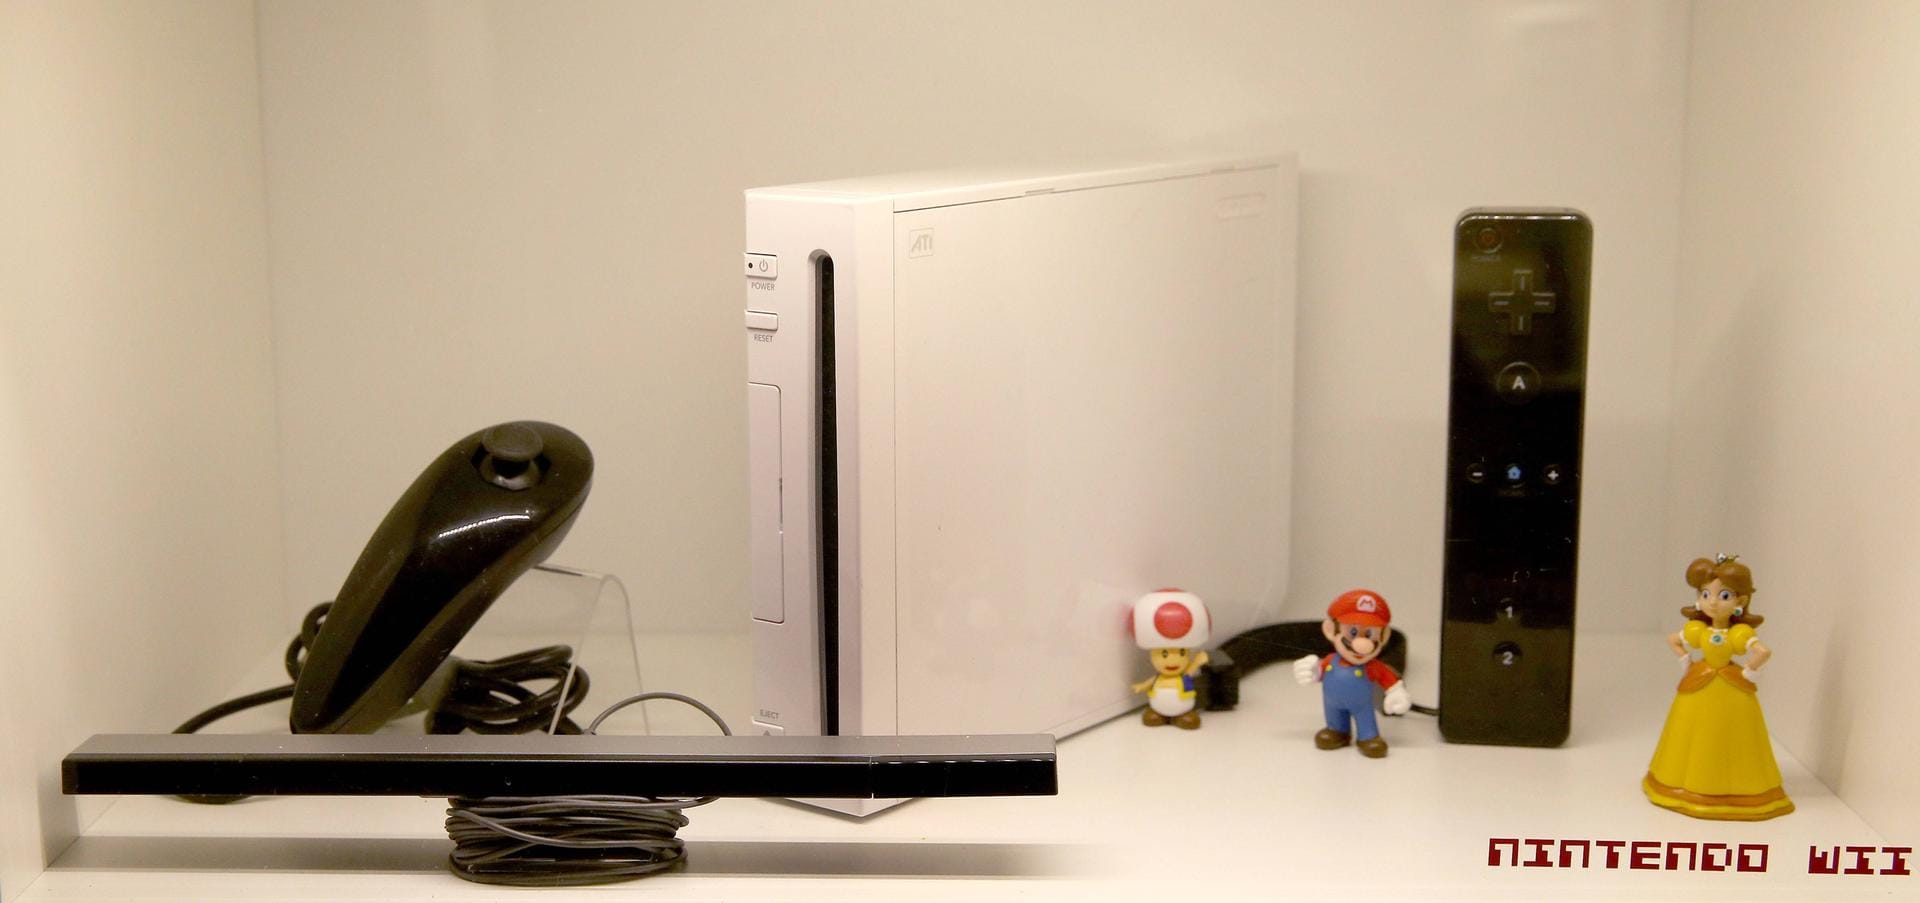 Deutlich besser lief es für Nintendo mit der Wii. Mehr als 100 Millionen Konsolen verkaufte der Konzern. Das besondere an der Wii war sein Controller: Mithilfe eines Bewegungssensors im Controller konnten Nutzer Spielfiguren steuern, indem sie den Controller bewegten. Die Wii erschien weltweit 2006.